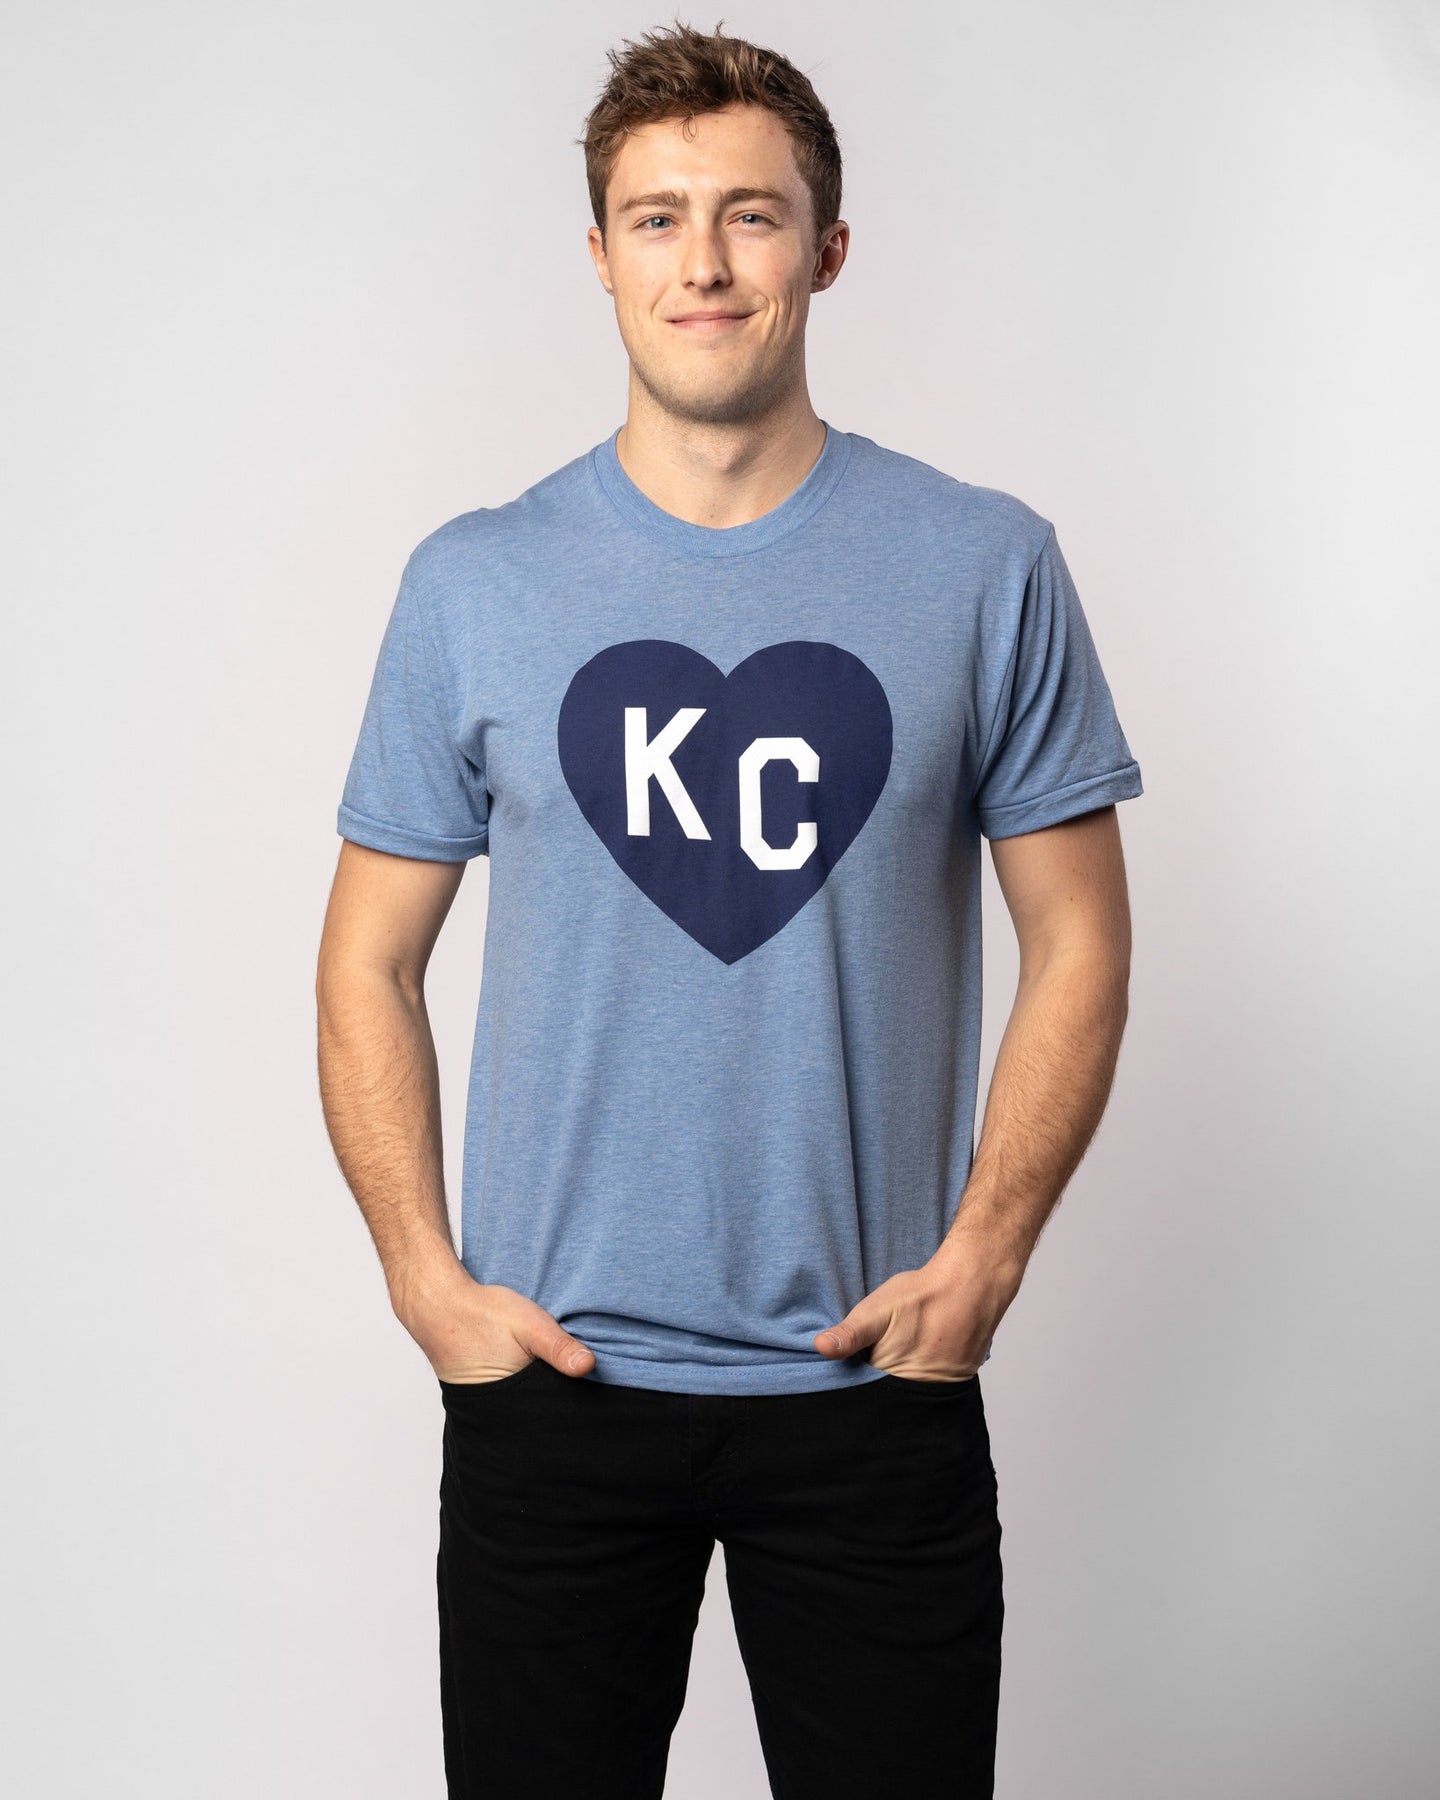 KC Heart Shirt Blue Heart KC Tee Cute Kansas City Spirit 